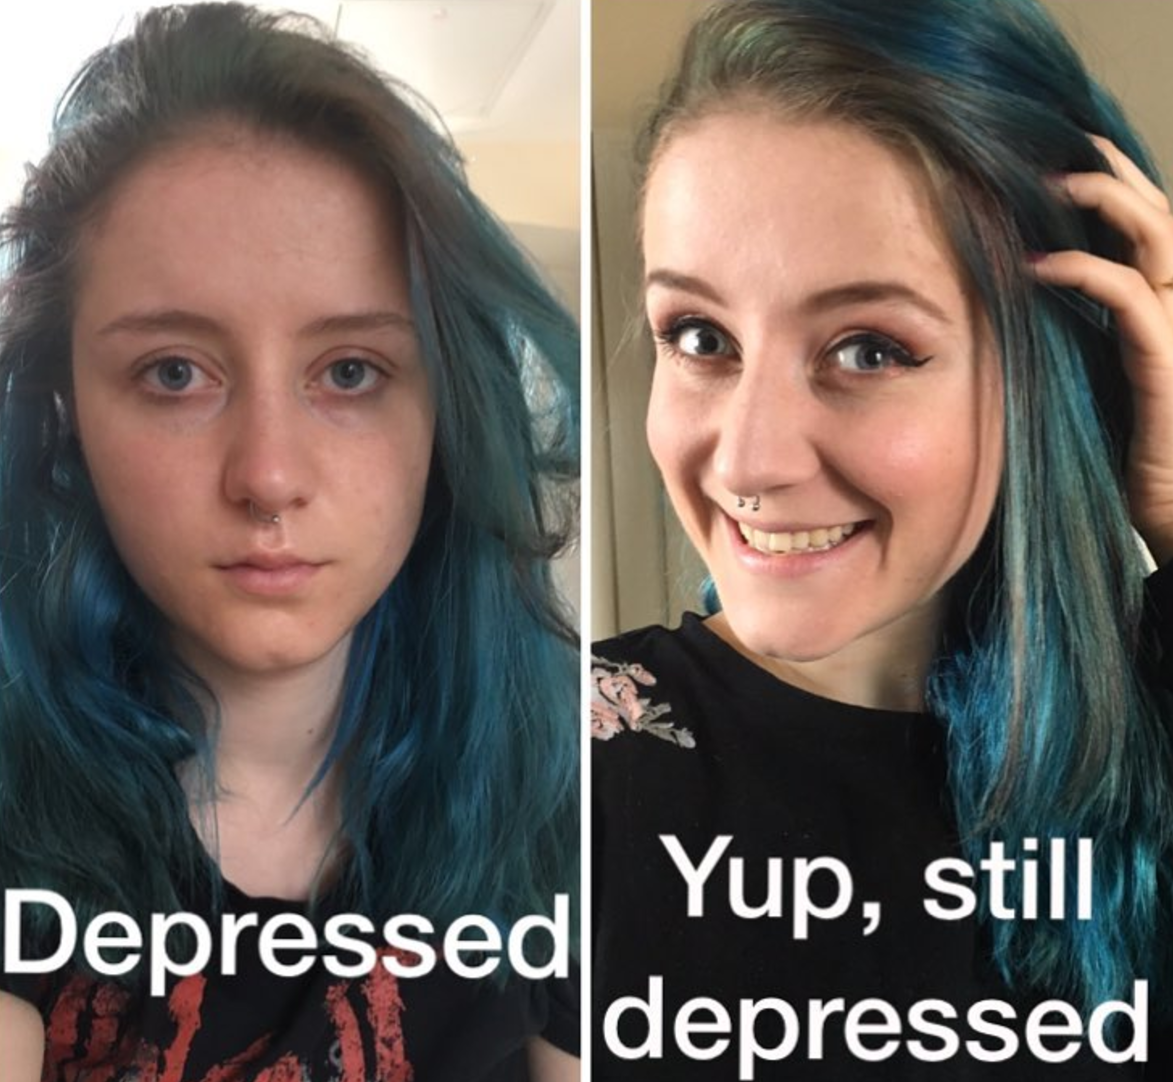 Persoanele depresive au nevoie de ajutor, dar nu vor recunoaste nicioadata acest lucru